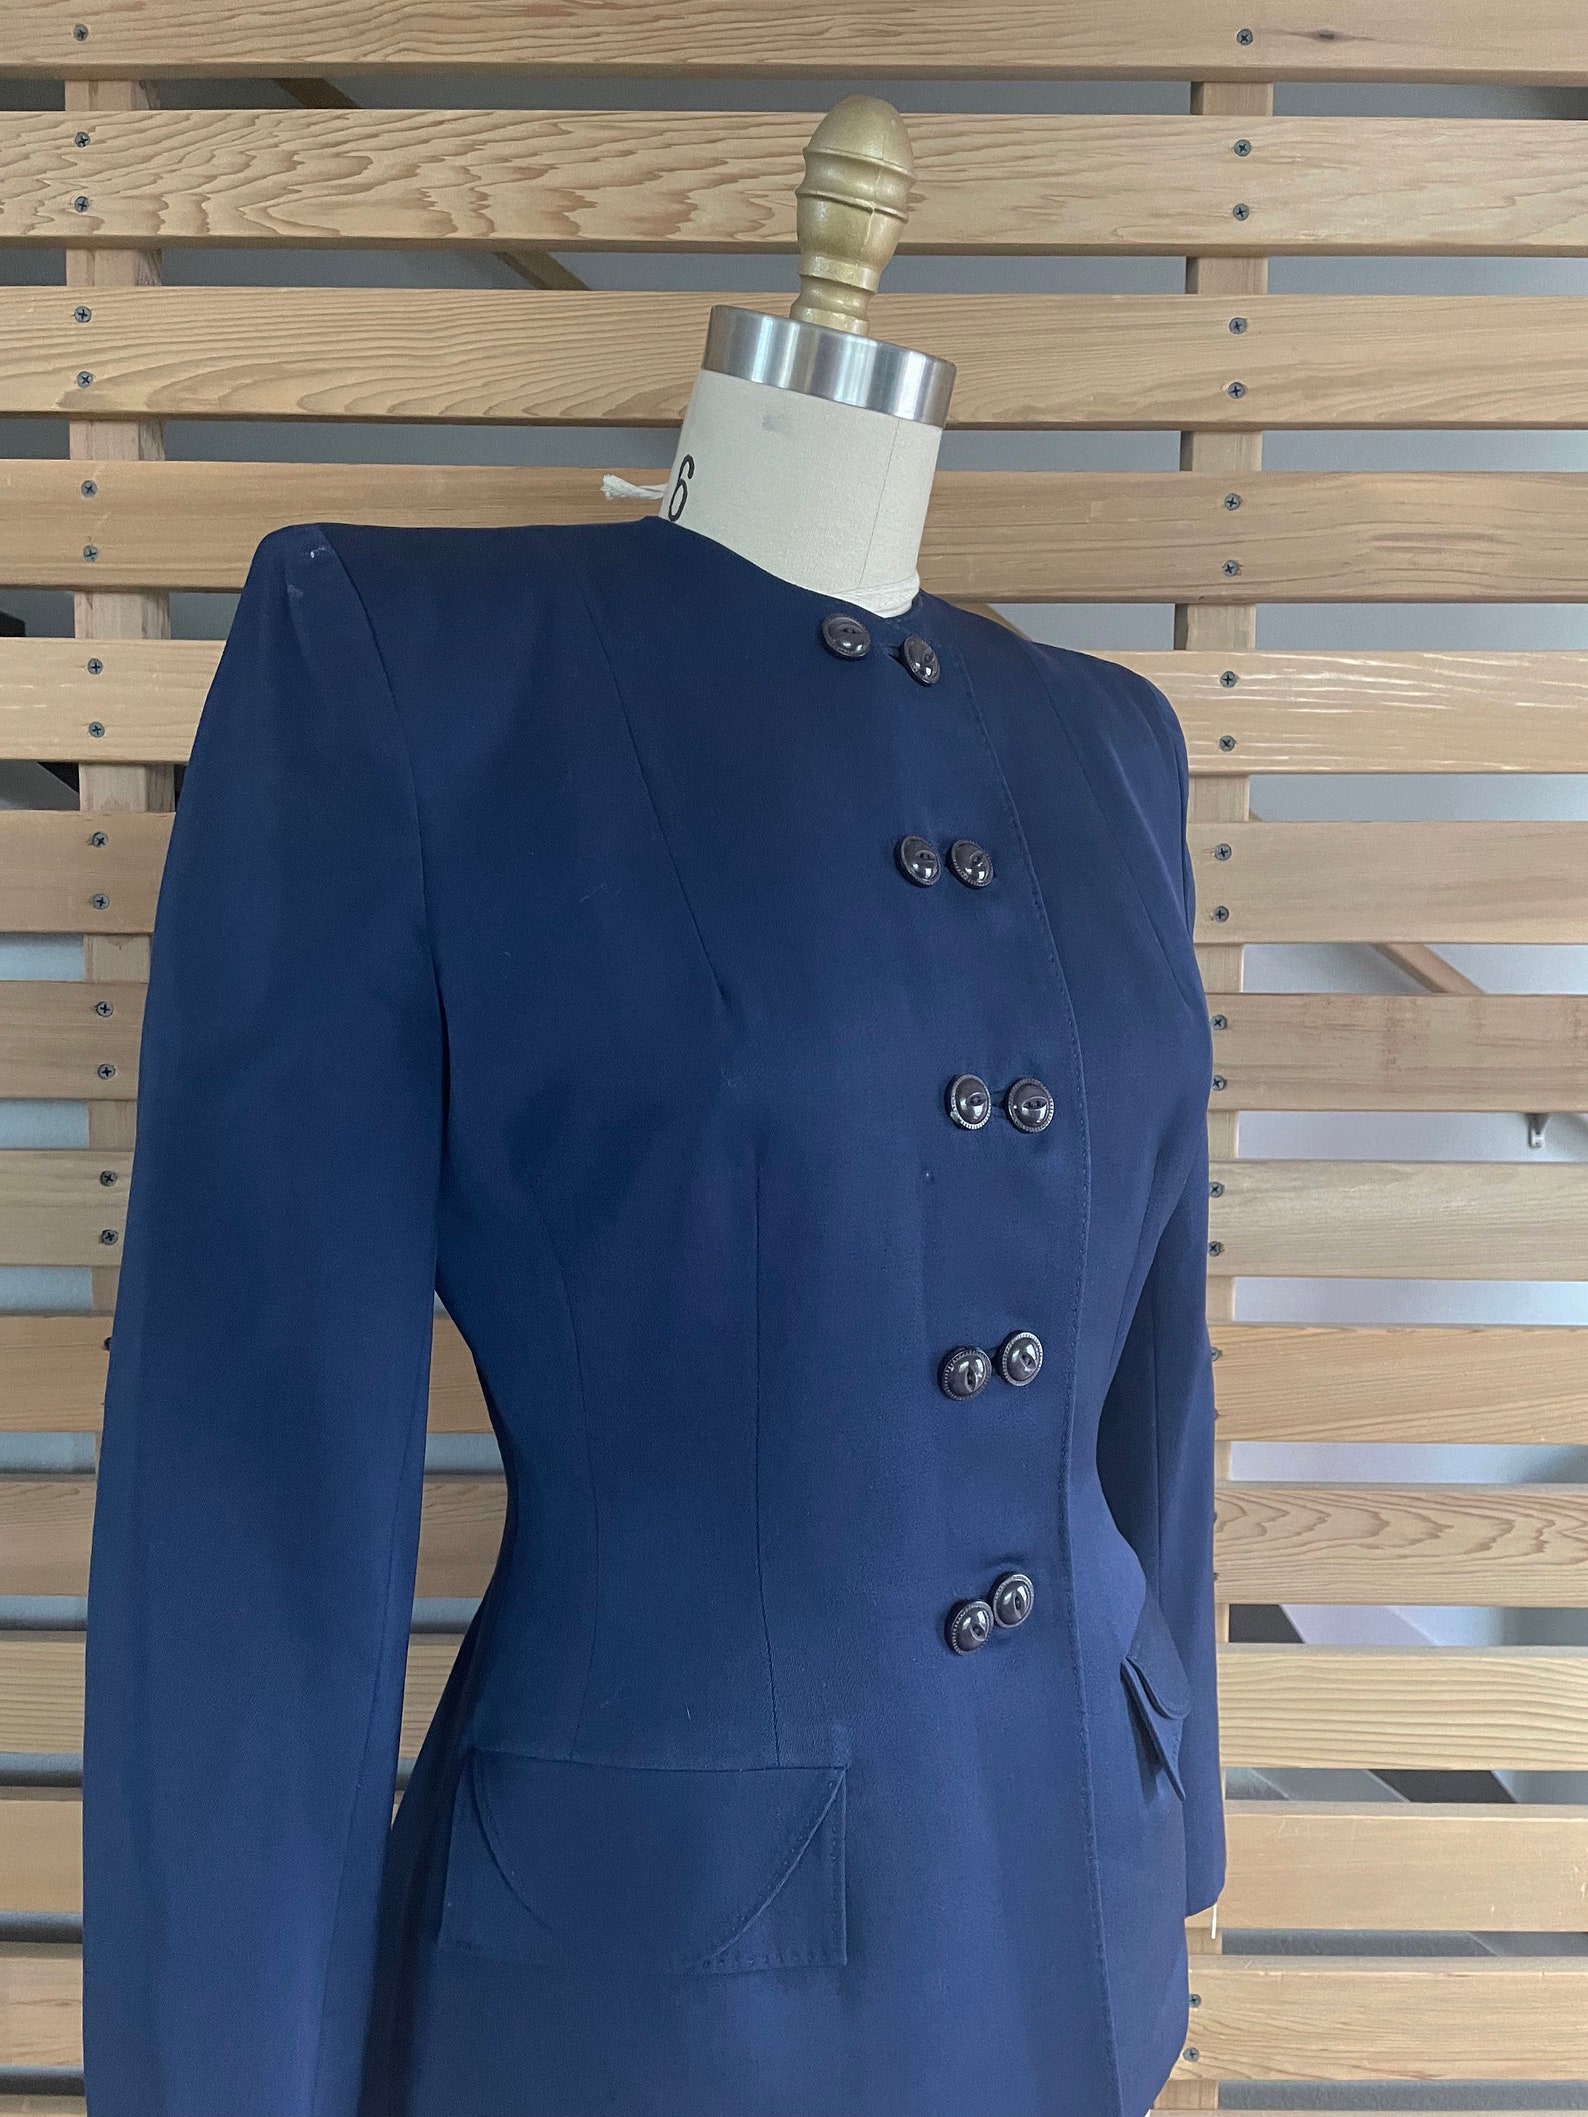 1940s Jacket Sleek 40s Navy Blue Gabardine Jacket with | Etsy